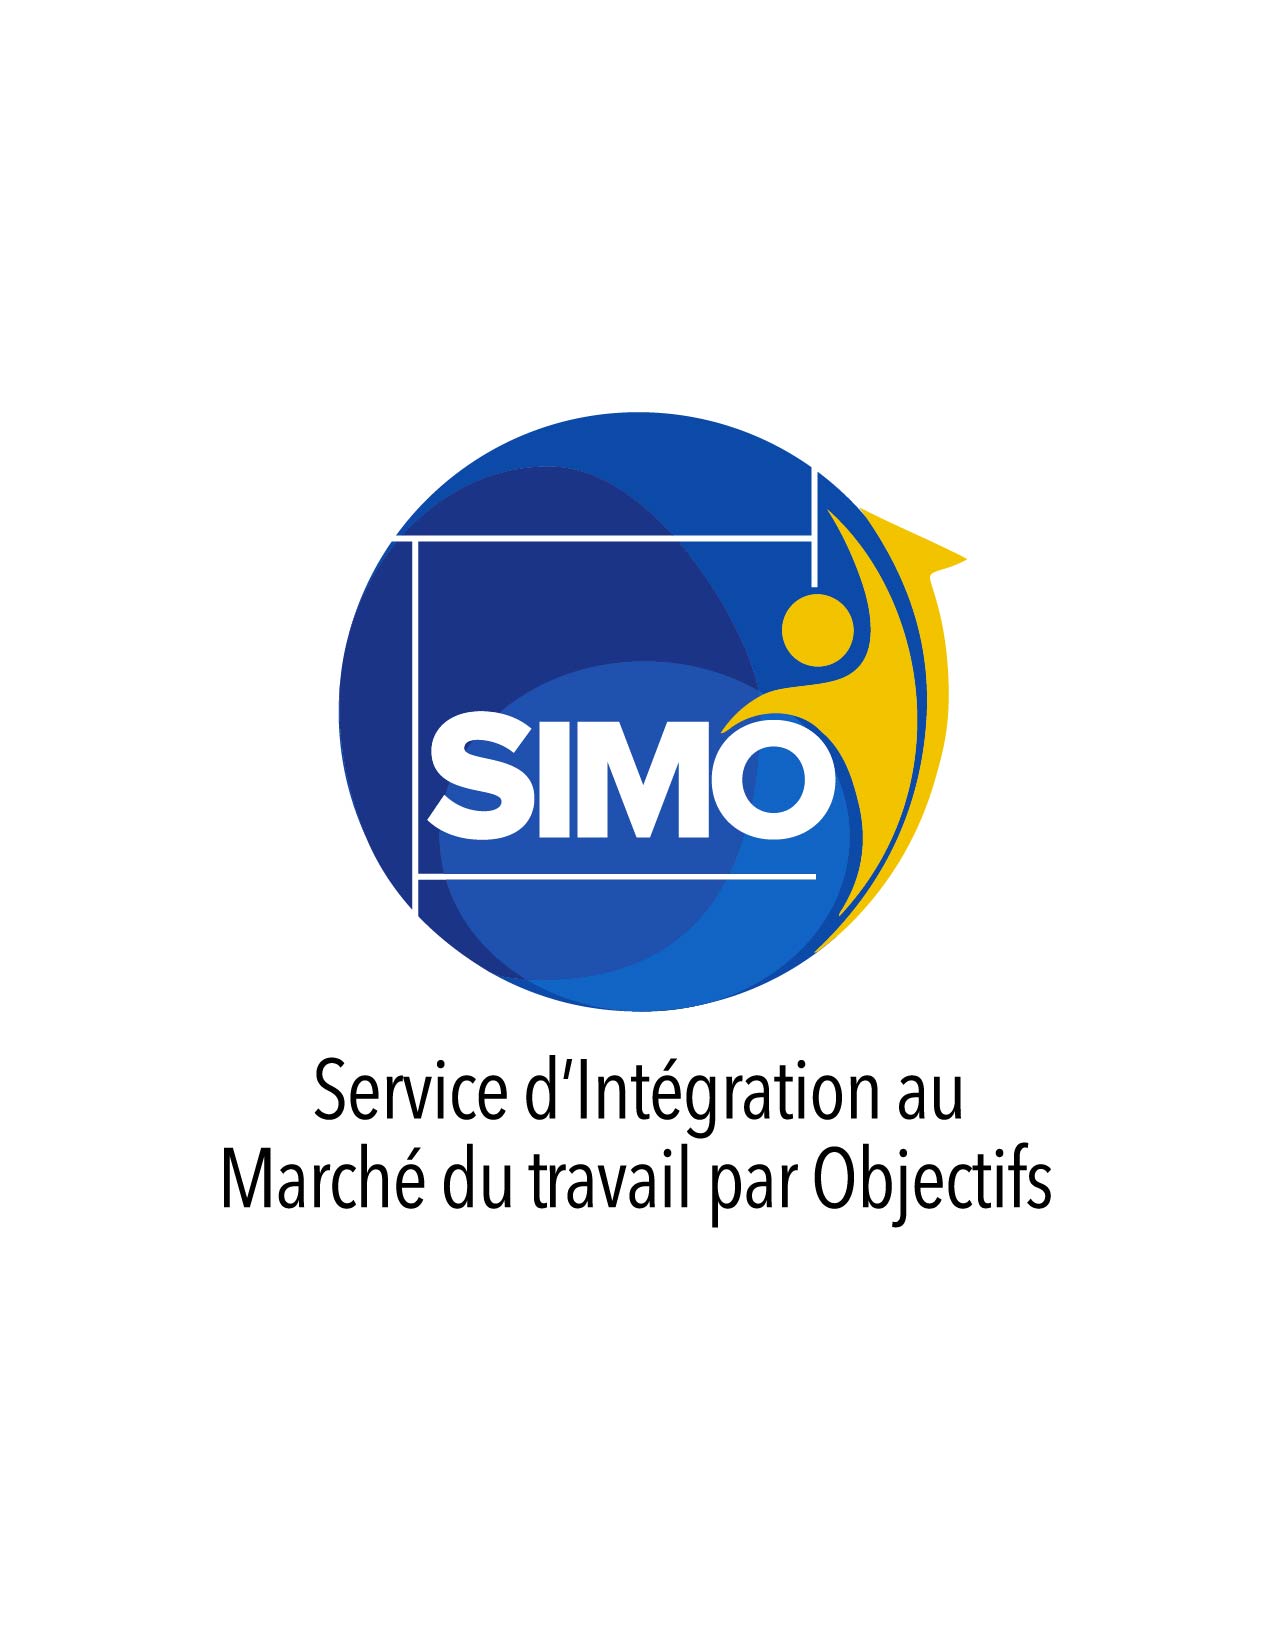 SIMO Service d’Intégration au Marché du travail par Objectifs